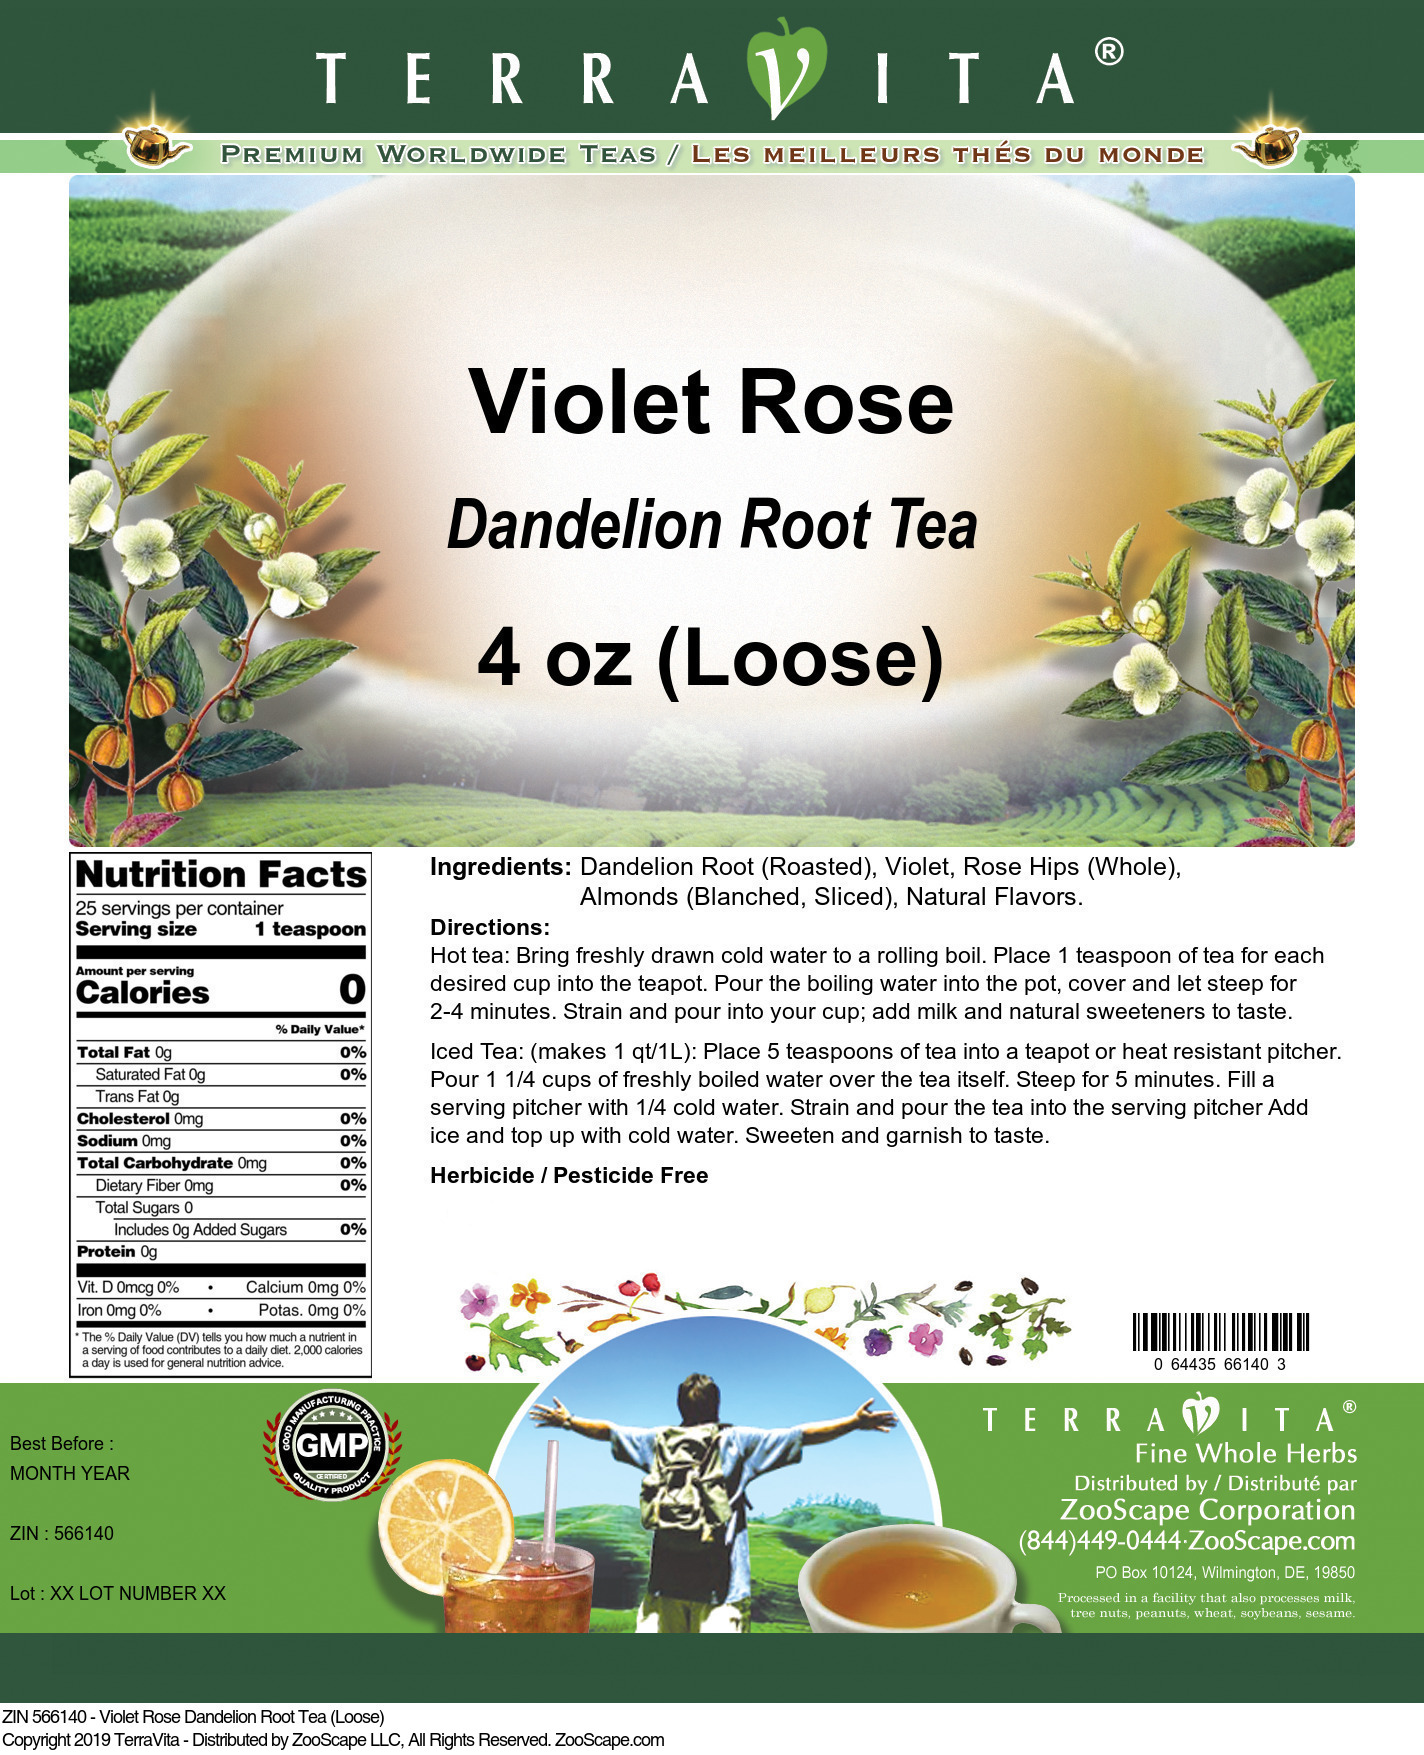 Violet Rose Dandelion Root Tea (Loose) - Label